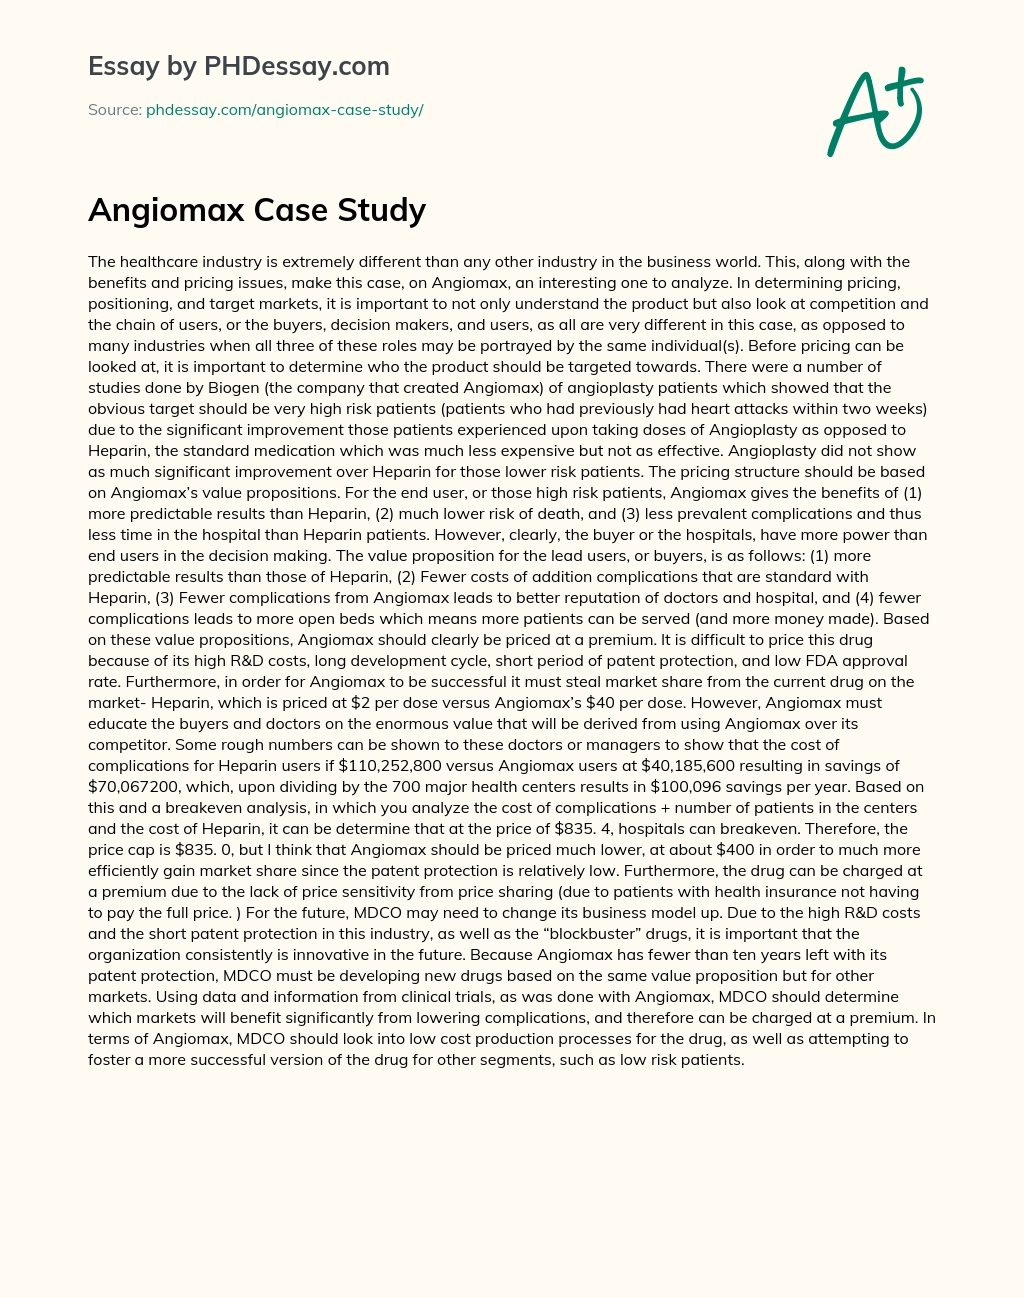 Angiomax Case Study essay